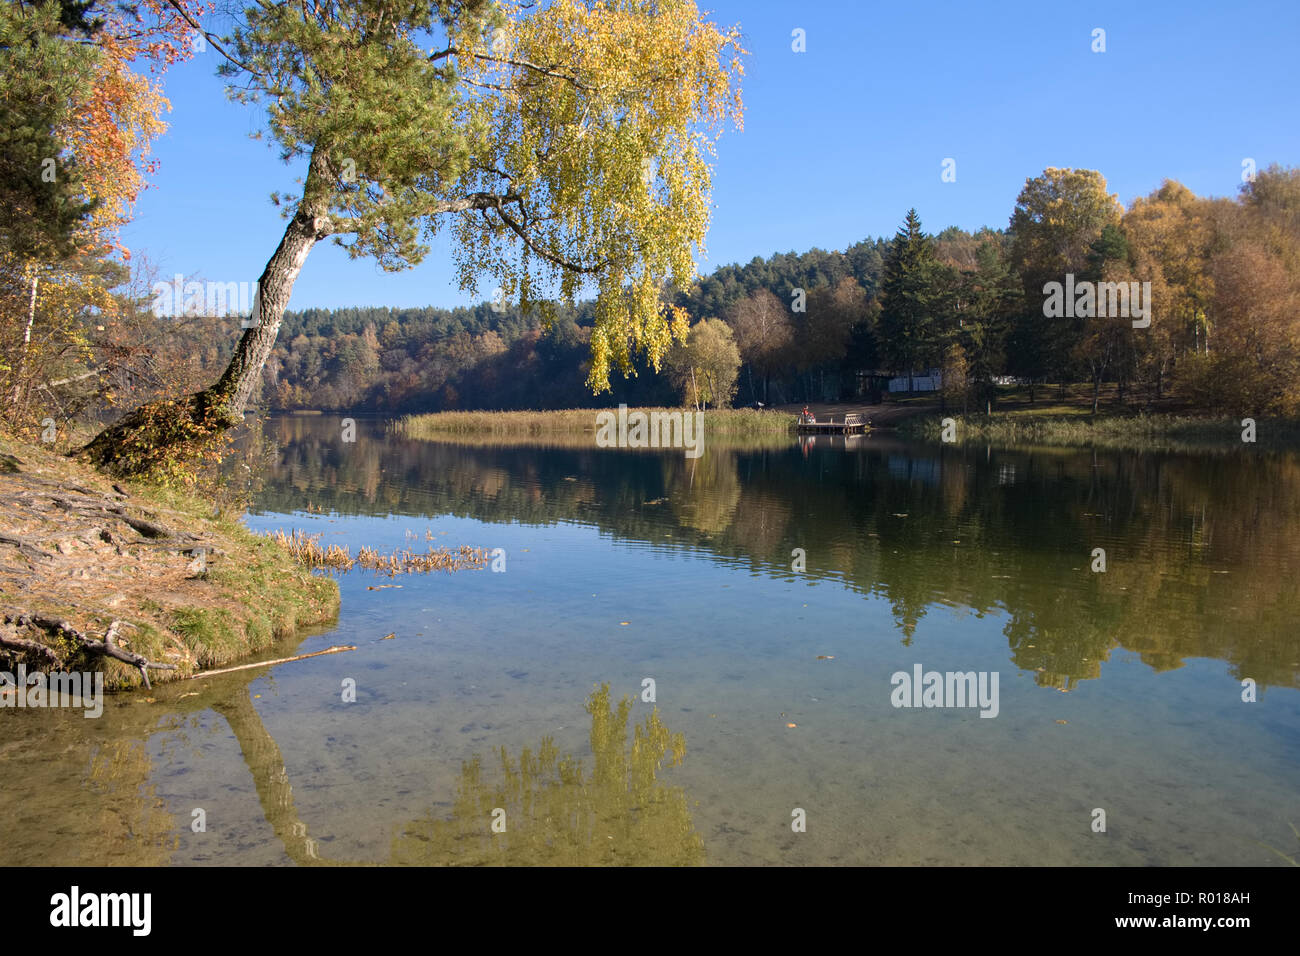 Wald mit Birke in einem See auf Herbst, Reflexion widerspiegeln, ruhig, friedlich und entspannend Stockfoto